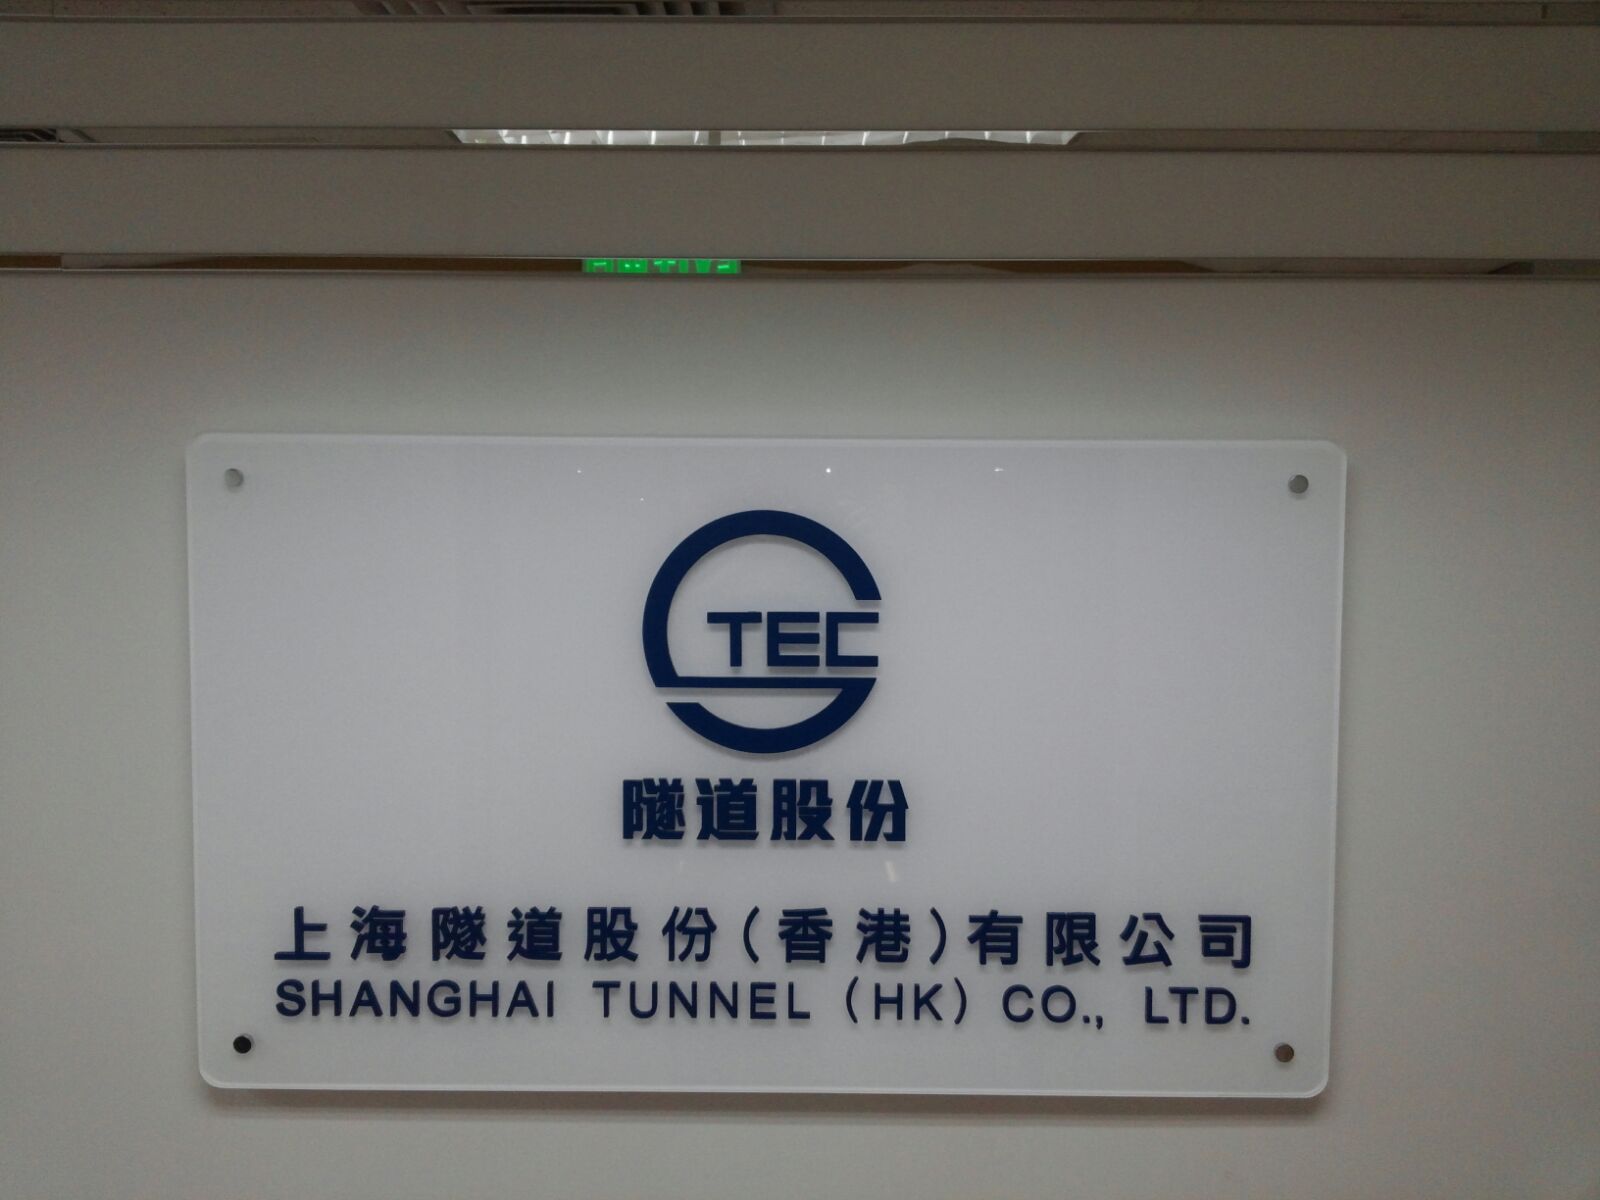 上海隧道股份(香港)有限公司